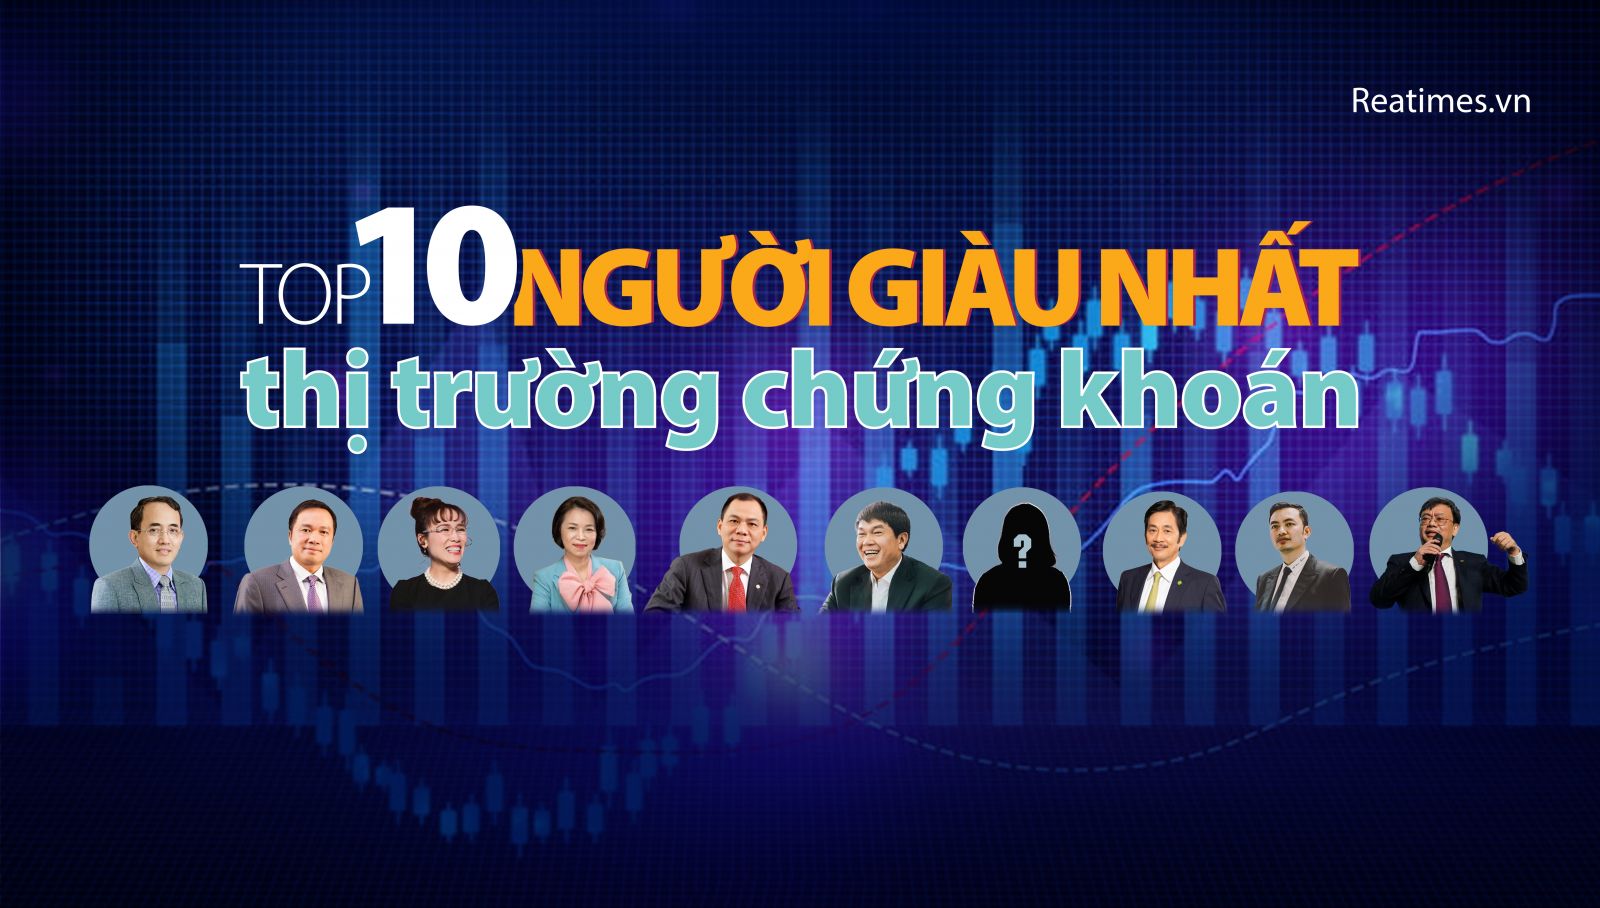 Chân dung 10 tỷ phú giàu nhất sàn chứng khoán Việt Nam